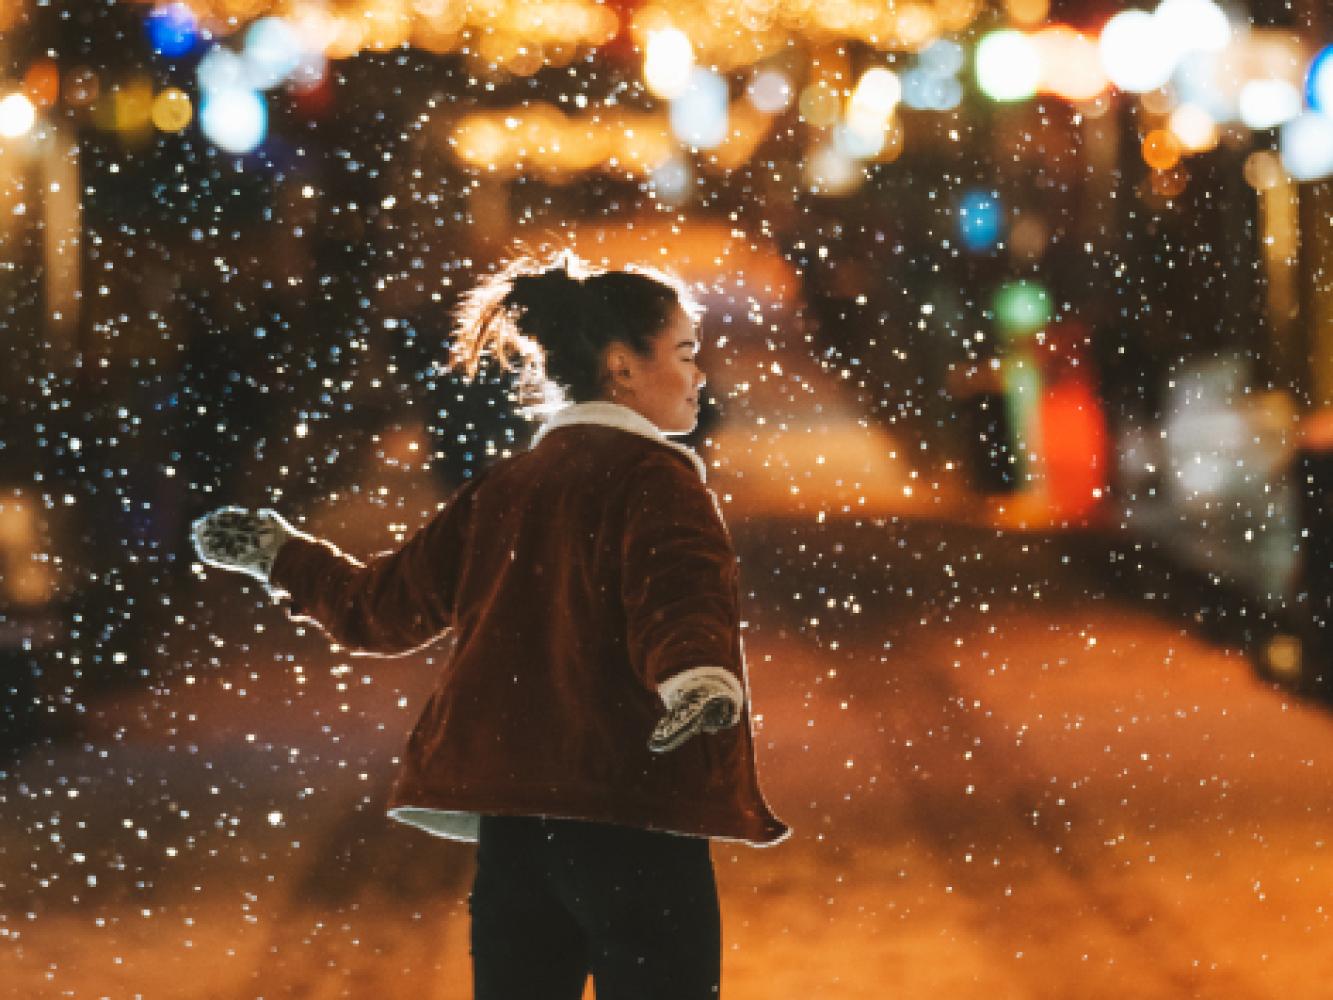 Jente nyter snøvær i Tromsø i jula